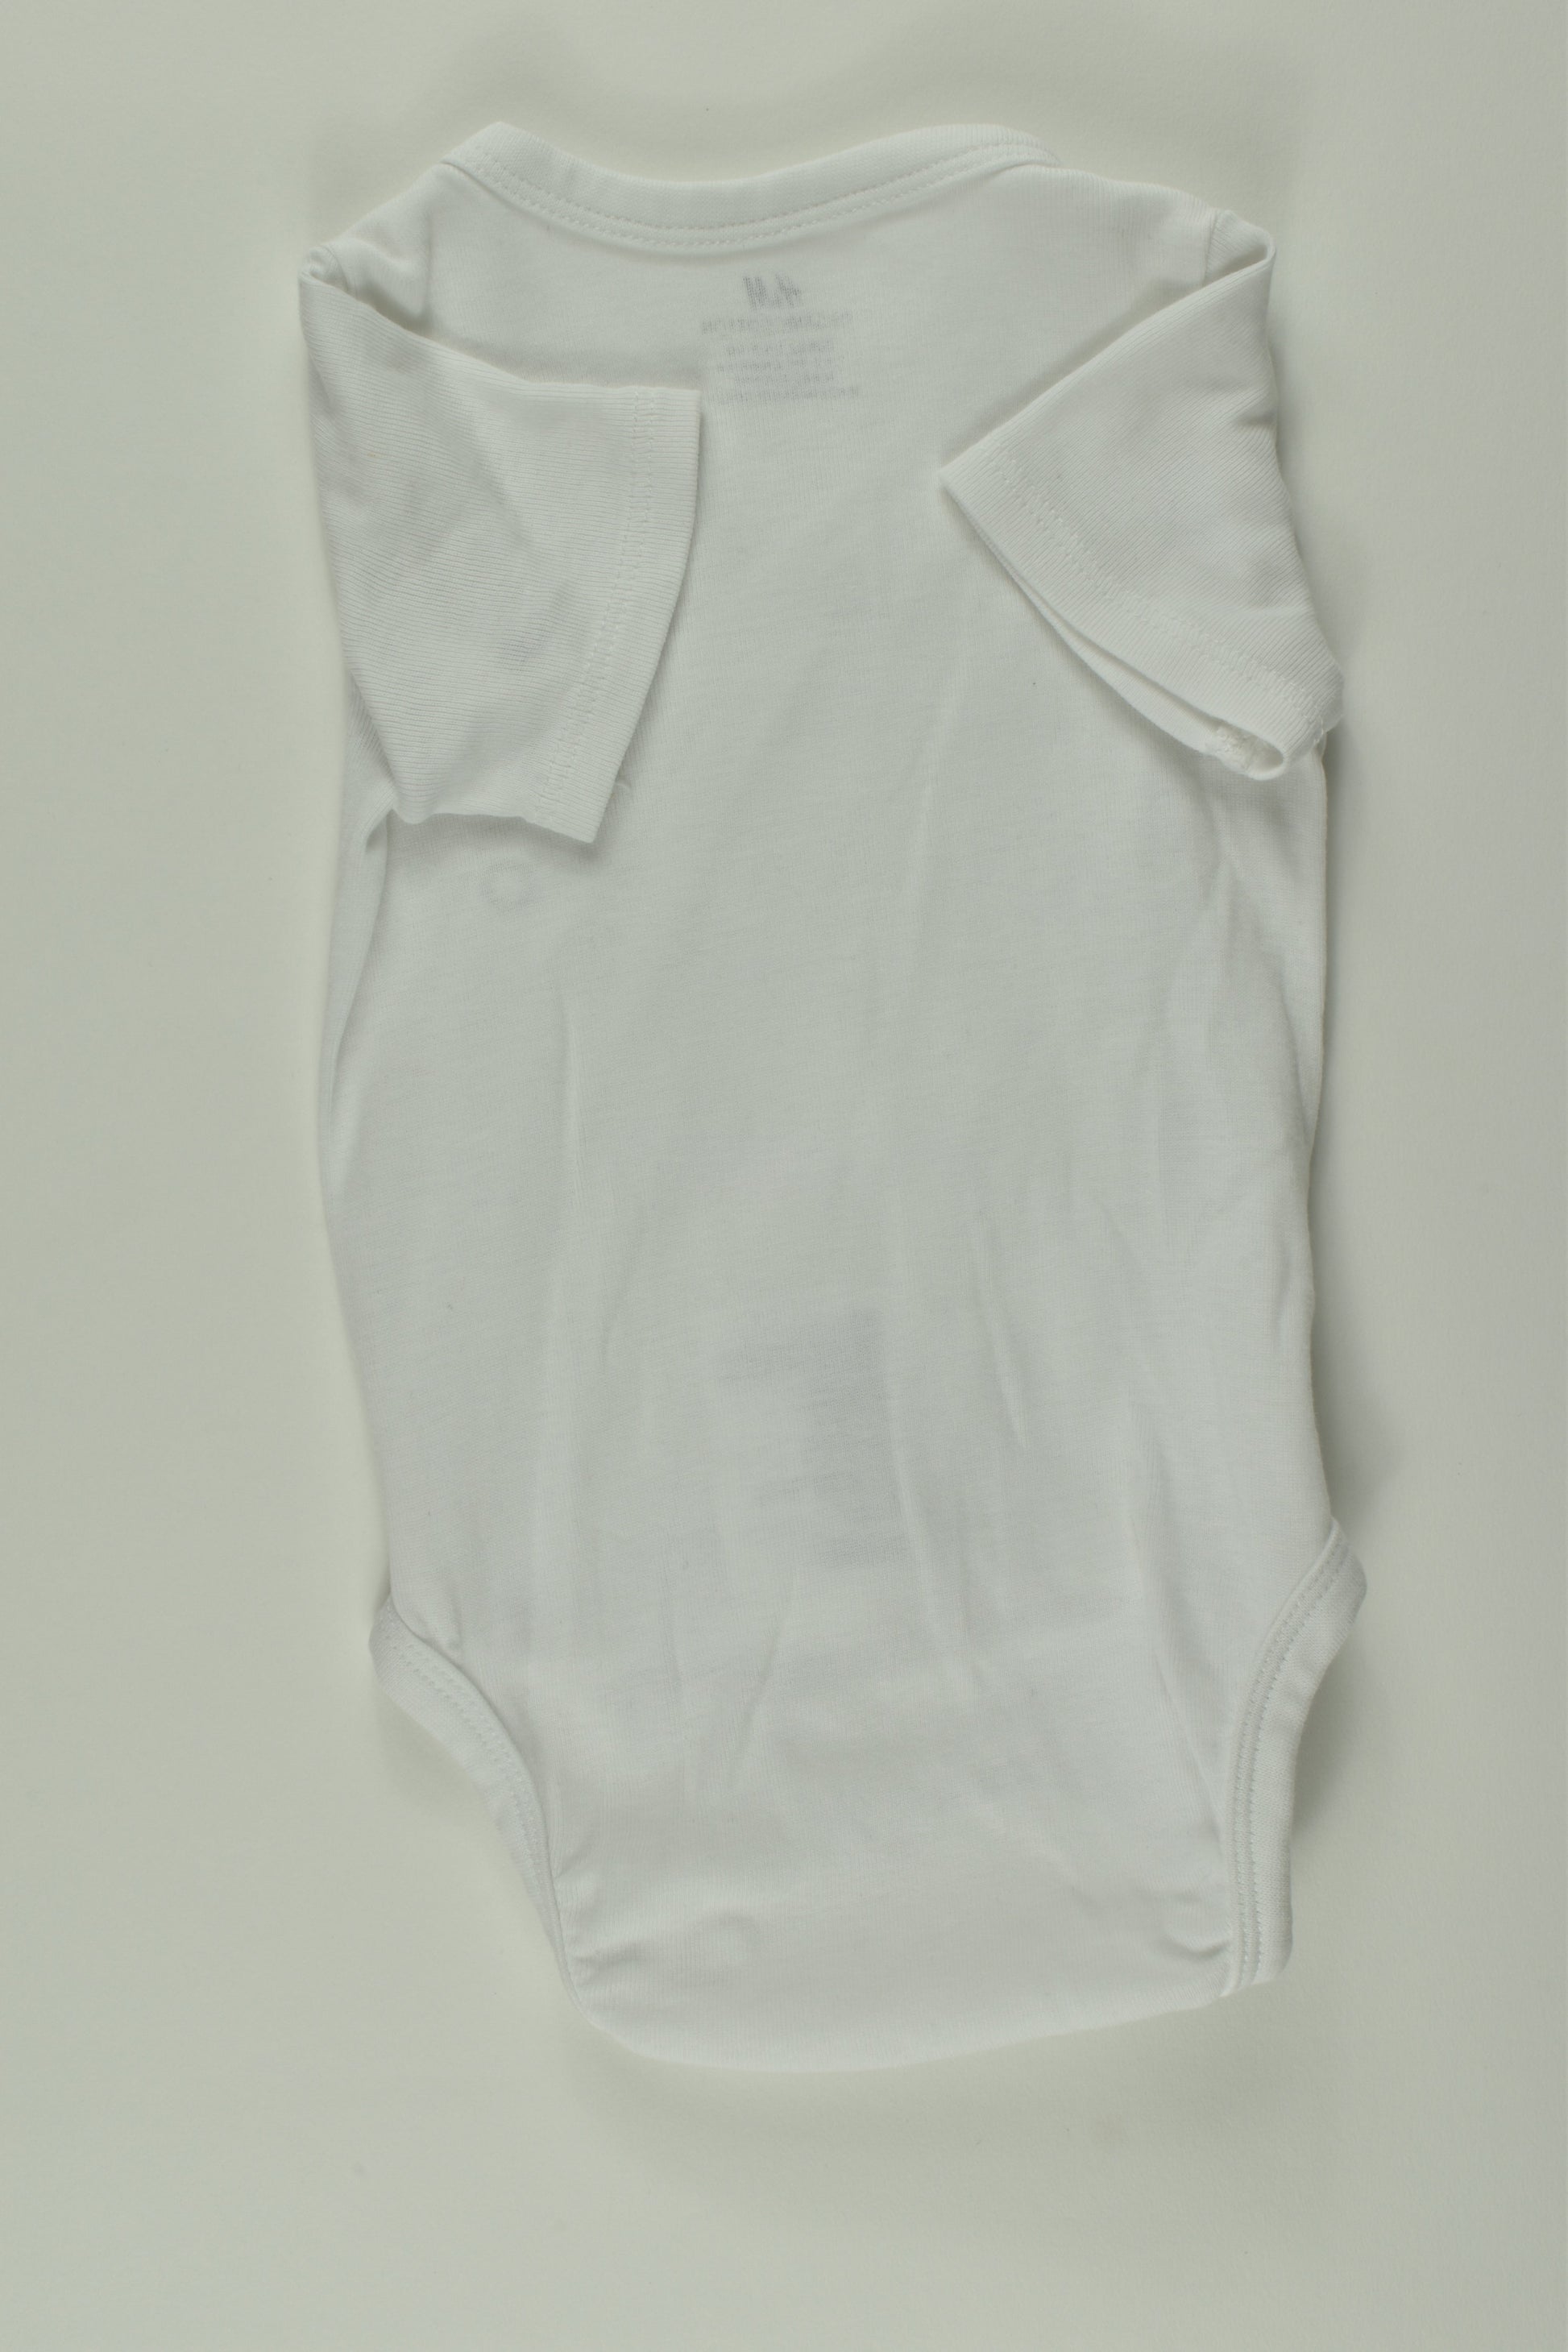 H&M Size 000 Organic Wrap Bodysuit